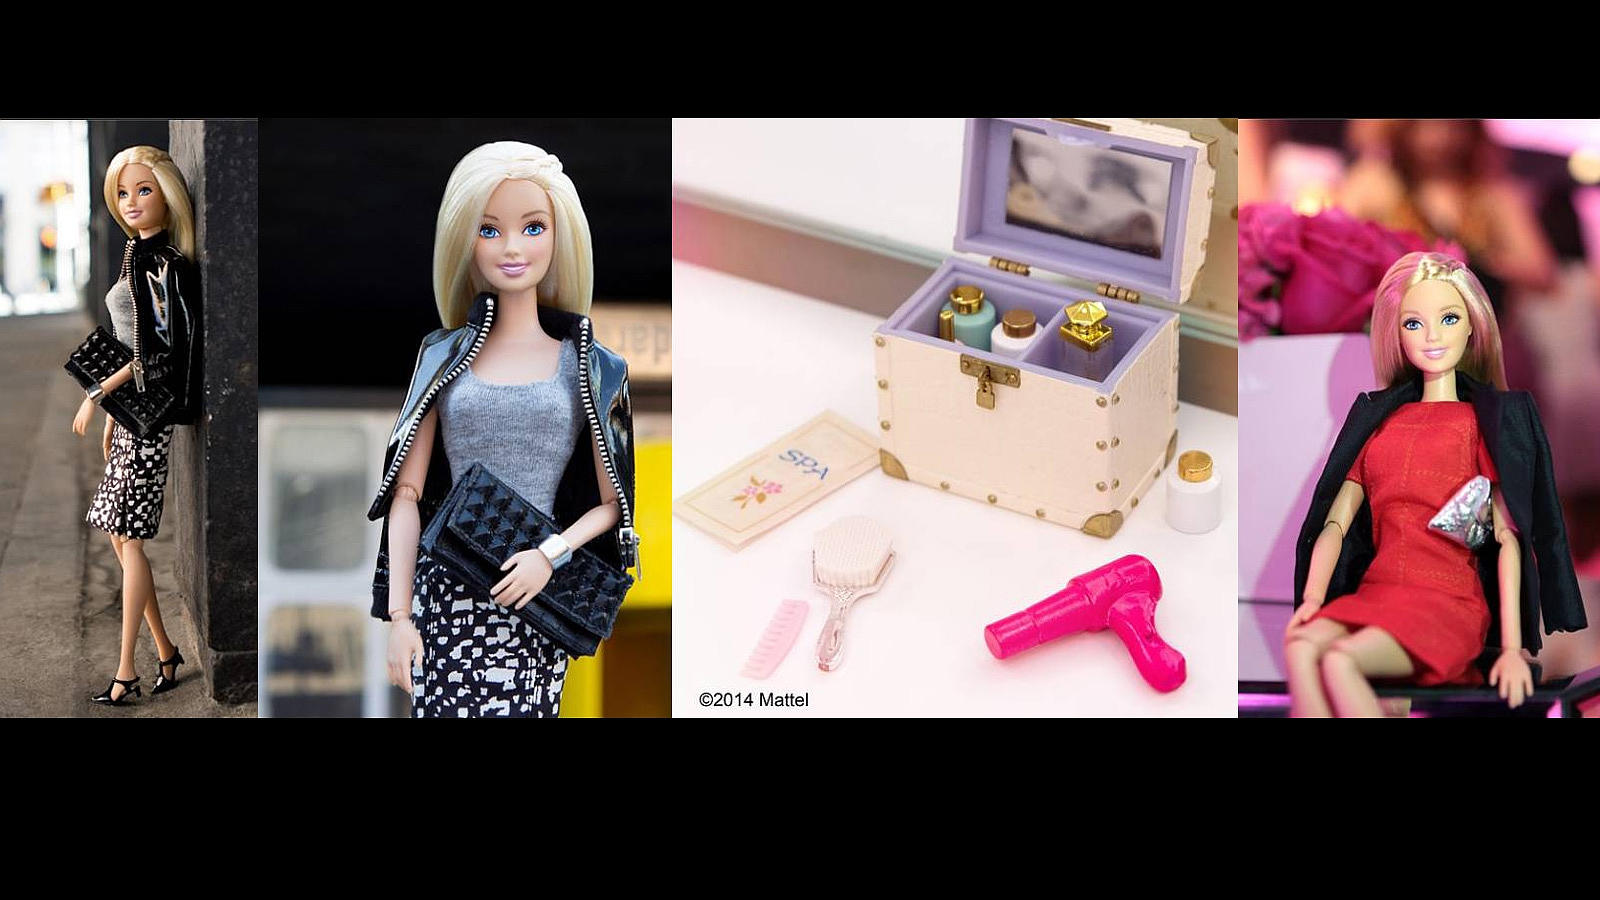 Barbie tiene que supervisar los detalles de la exposición de diseños inspirados en su estilo en el Meatpacking District. Después de una dura jornada, toca arreglarse para estar lista para el evento nocturno con VIPs en la exposición